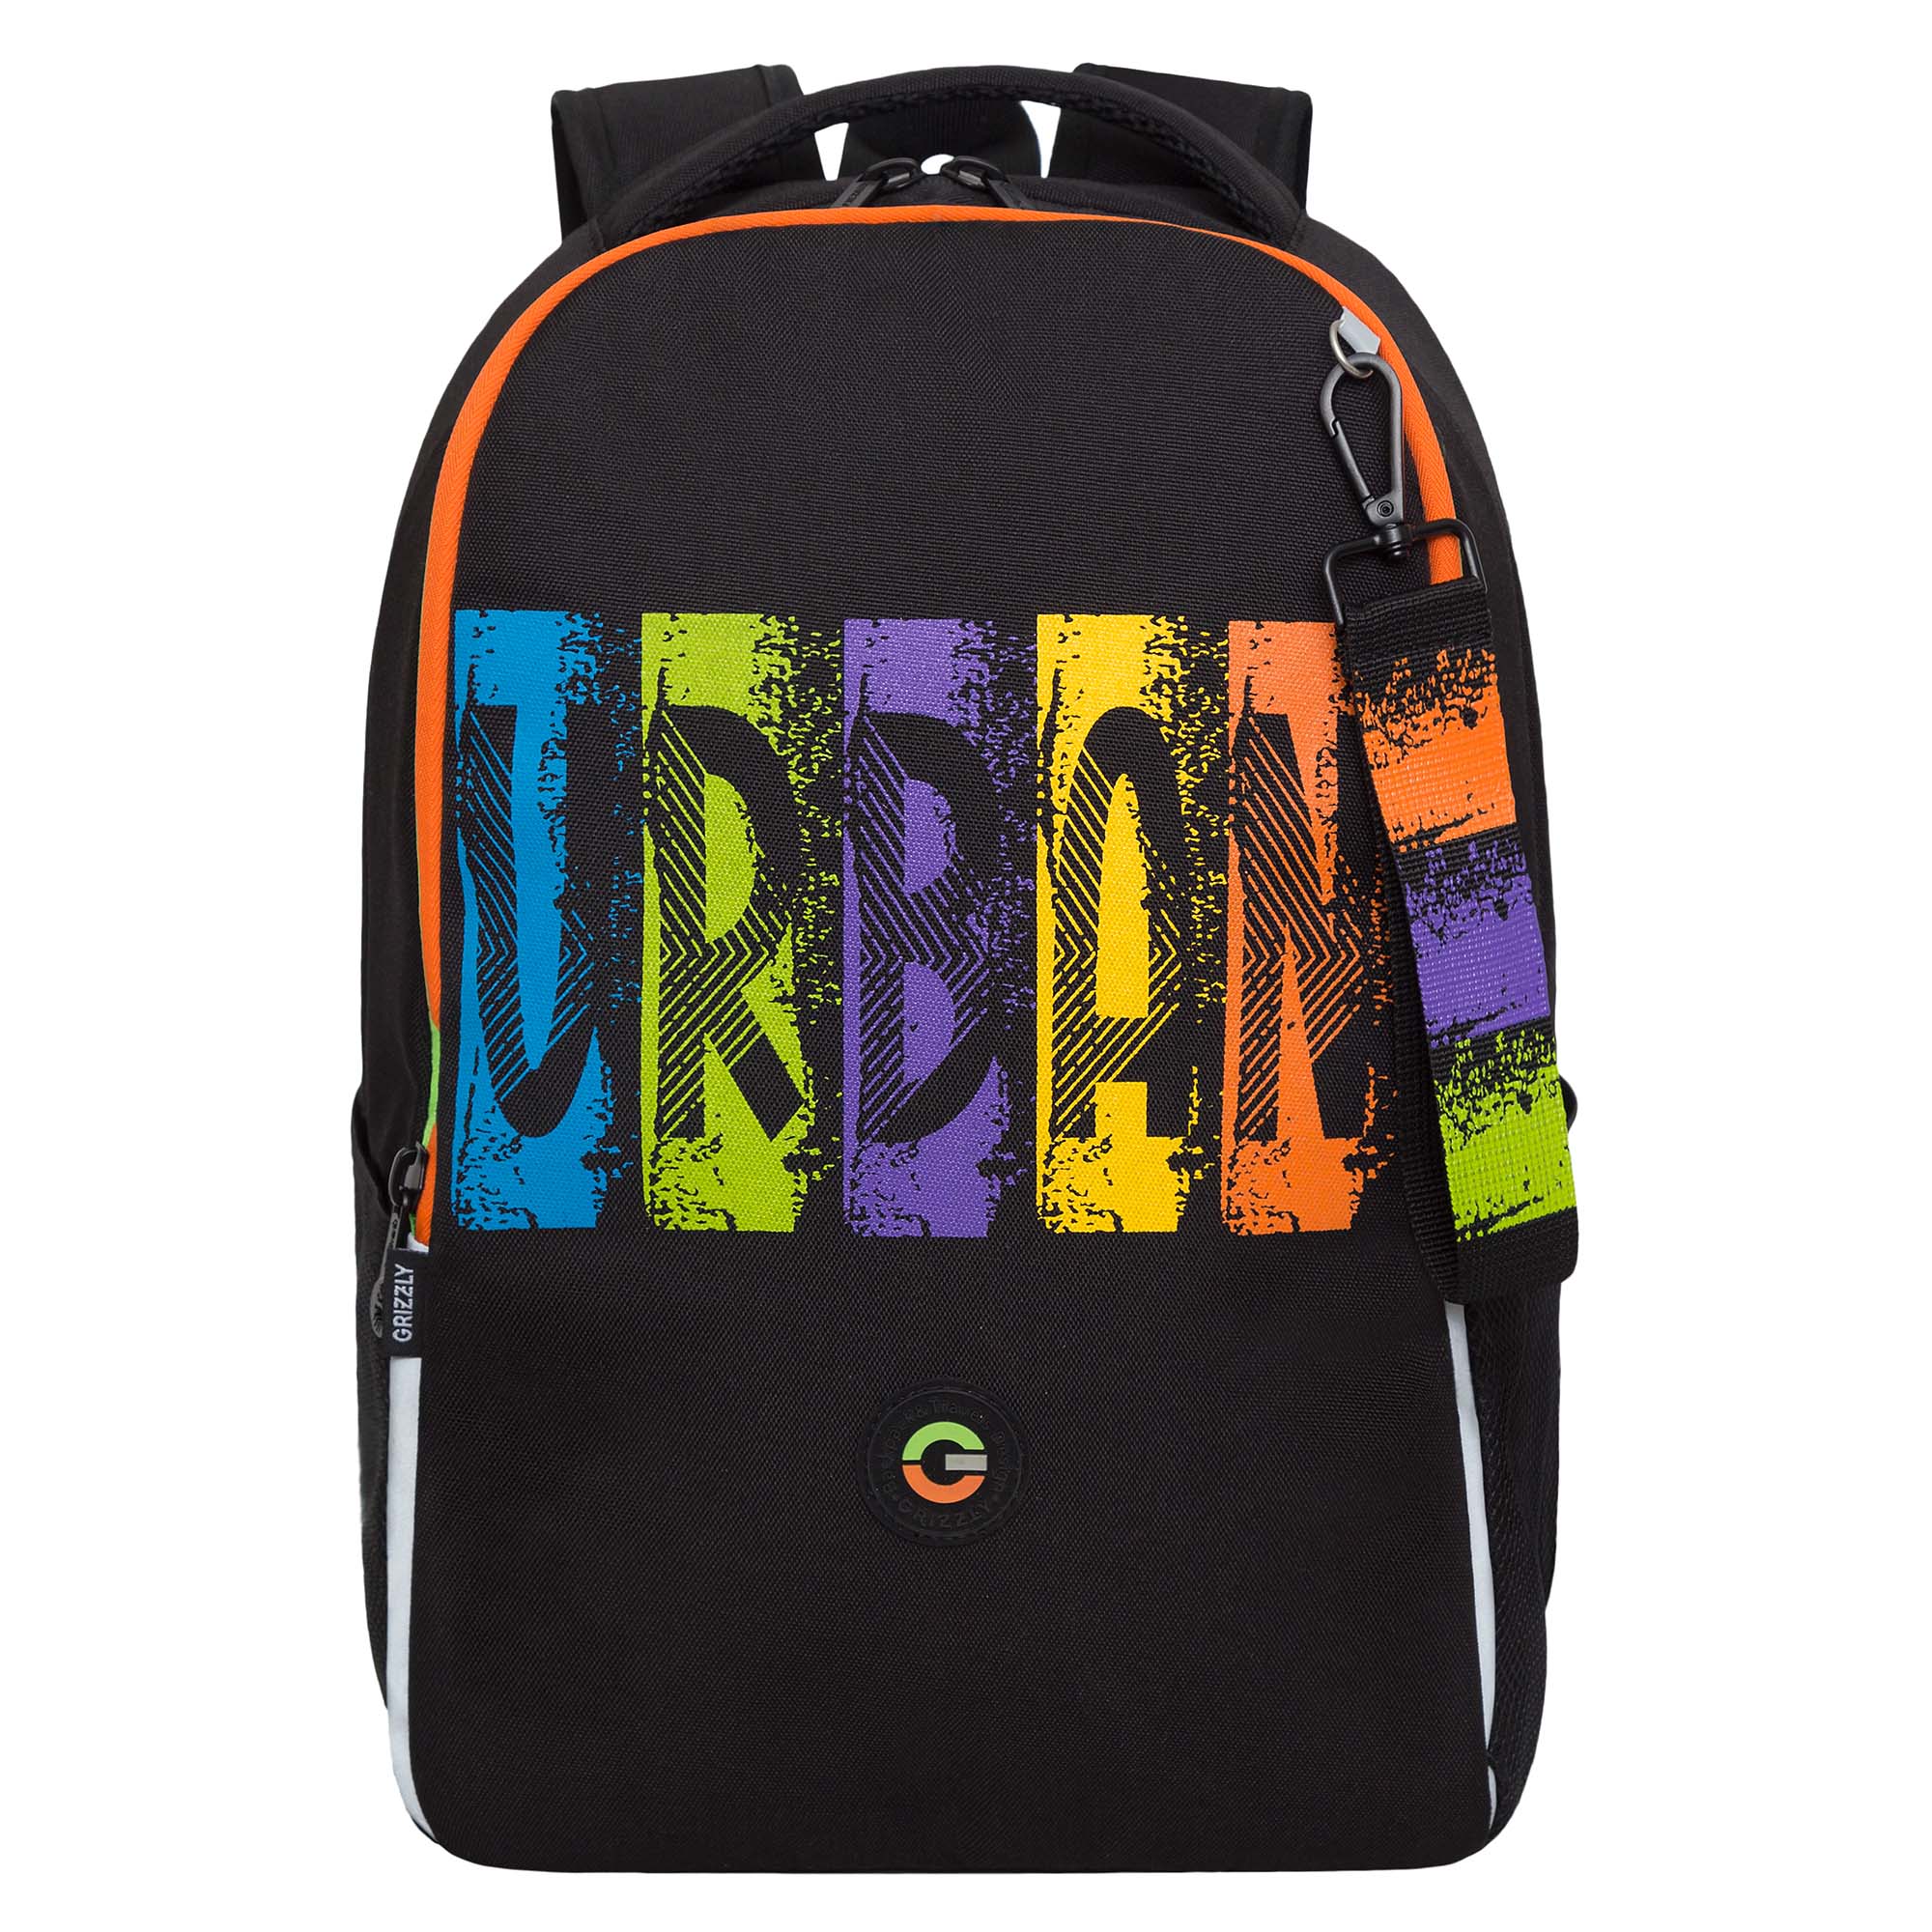 Рюкзак школьный GRIZZLY легкий с жесткой спинкой, 2 отделения, черный, RB-451-3/1 рюкзак школьный grizzly с карманом для ноутбука 13 2 отделения для девочки rg 466 2 1